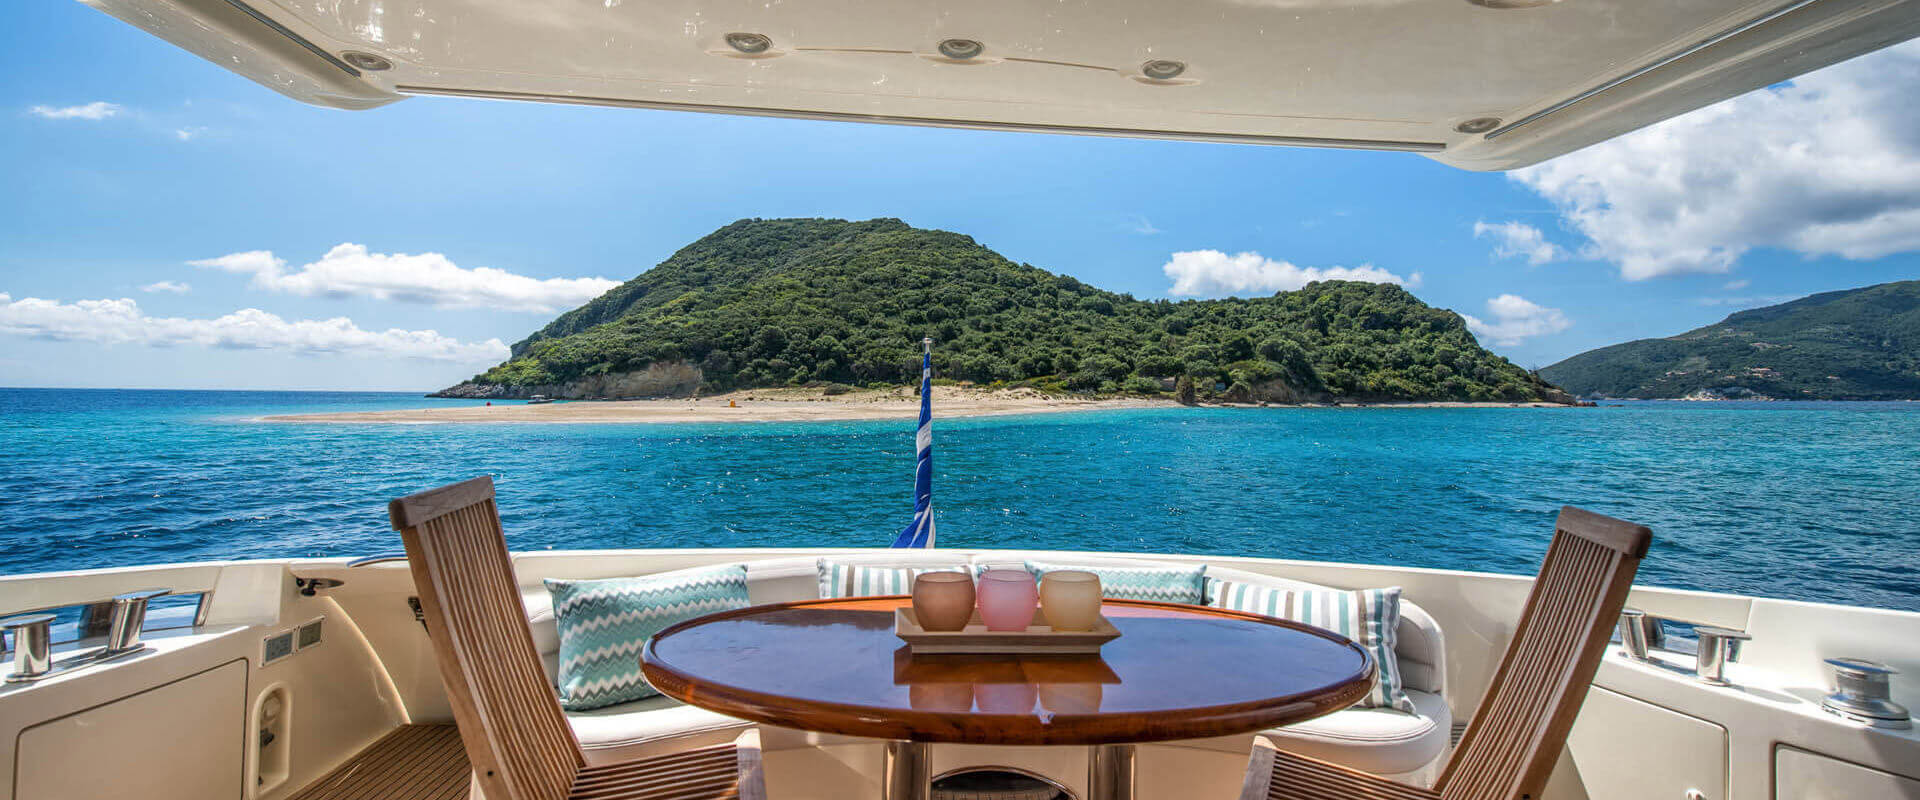 Private Yachts - Bozonos luxury private villas - Zante